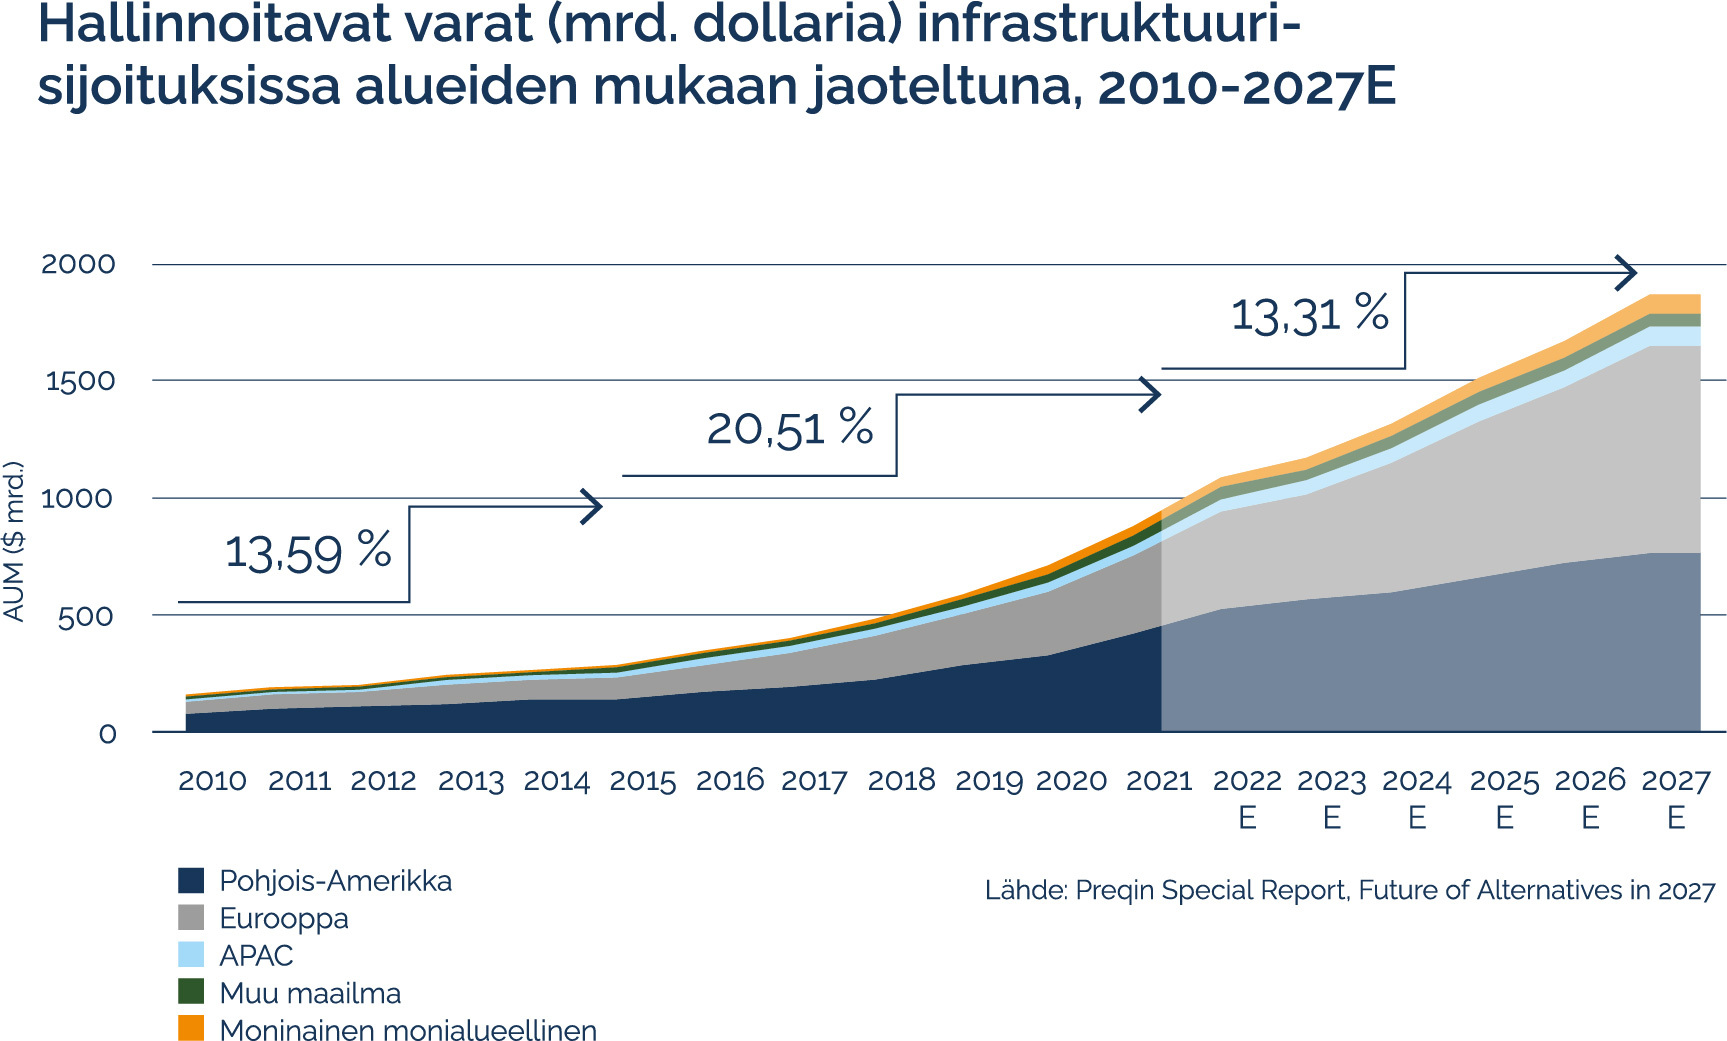 Hallinnoitavat varat (mrd. dollaria) infrastruktuurisijoituksissa alueiden mukaan jaoteltuna, 2010-2027E